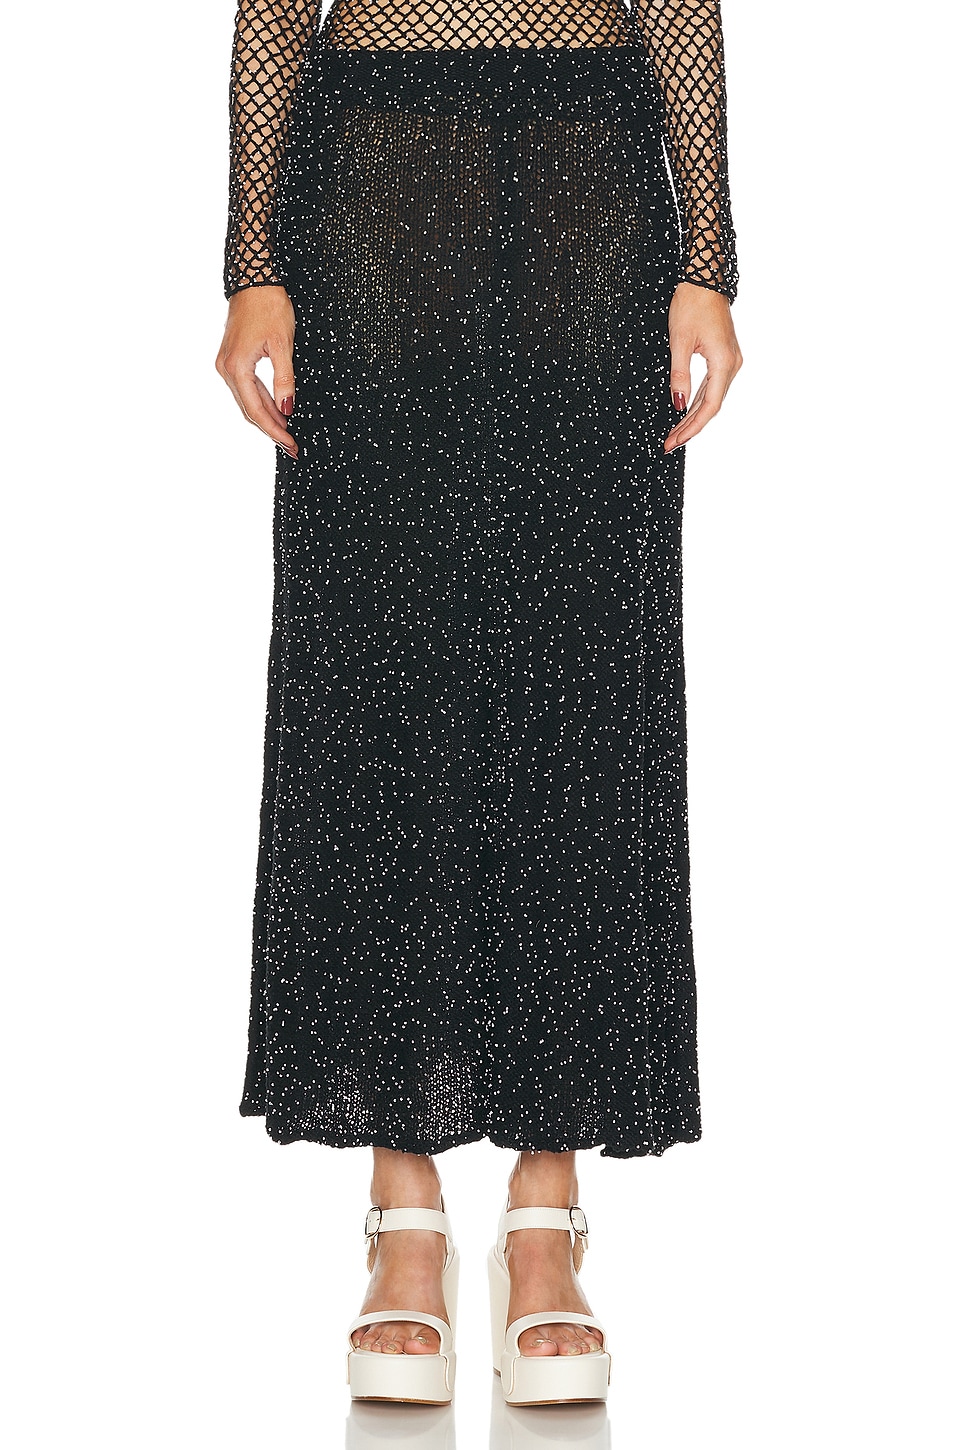 Image 1 of Gabriela Hearst Floris Skirt in Black & White Beads